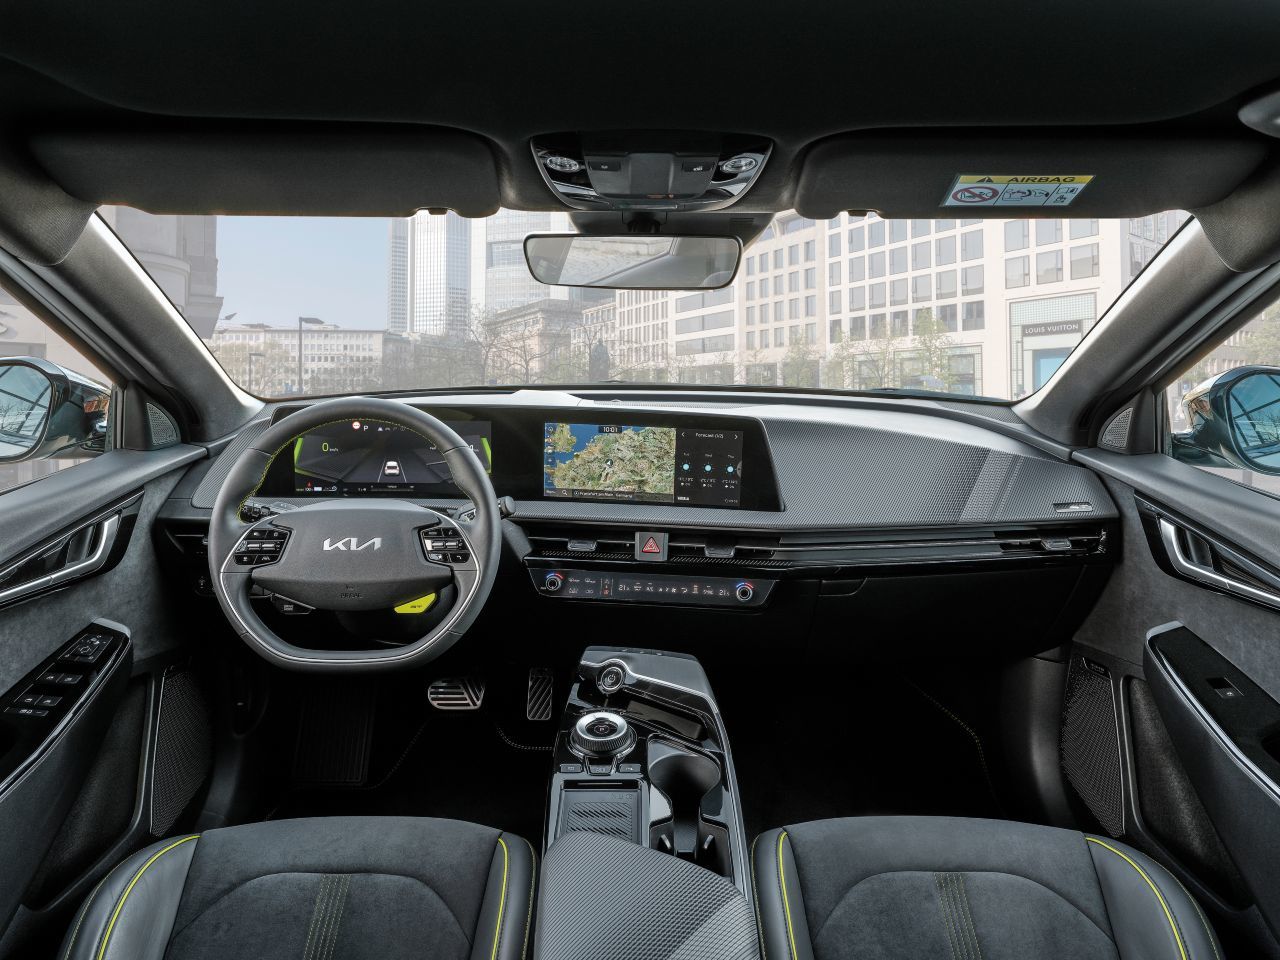 Cockpit-Layout und Bedien-Konzept ist gleich wie beim ziviler motorisierten EV6, das sportliche Ambiente erledigen die Applikationen.